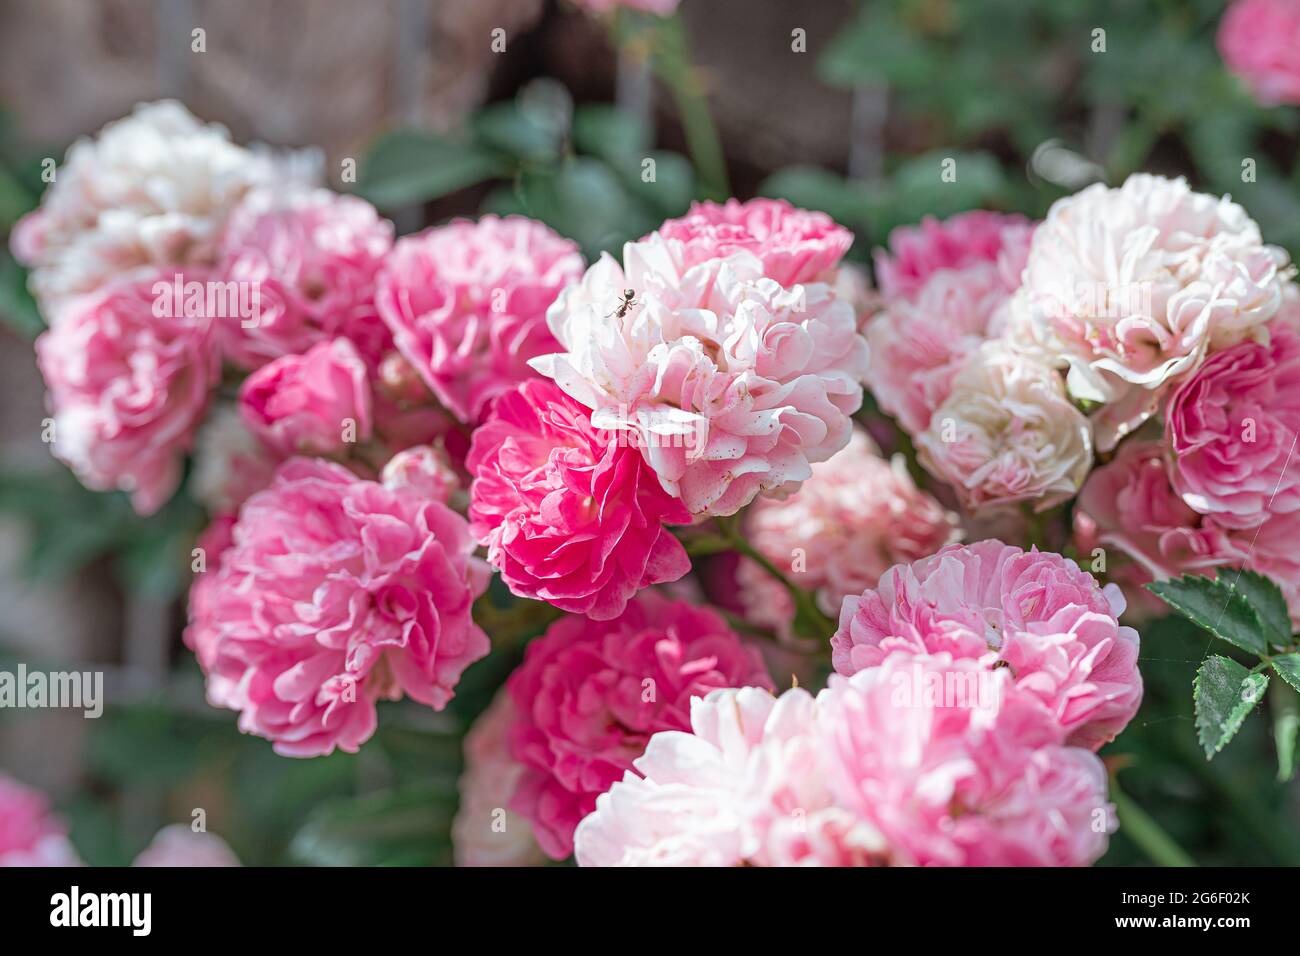 Arrampicata curly terry giardino rosa primo piano su una recinzione gabion. Messa a fuoco morbida Foto Stock